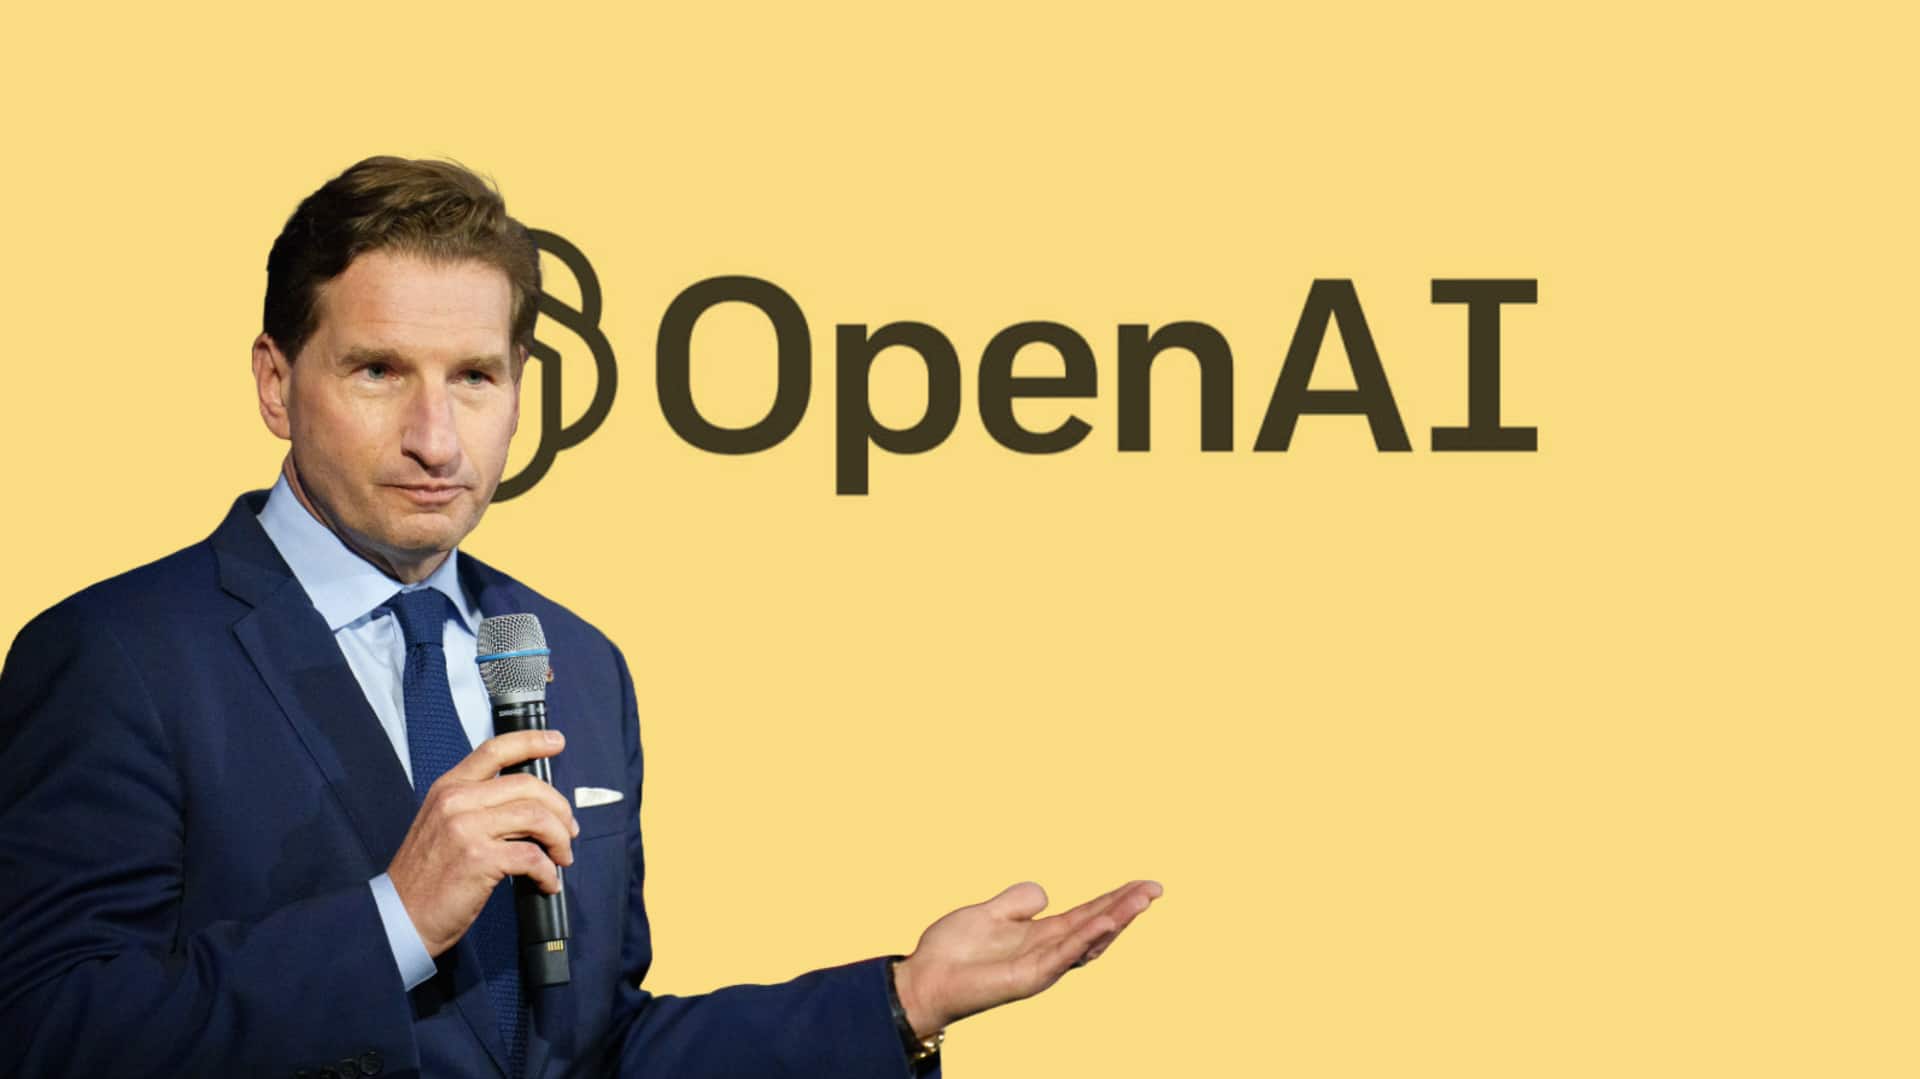 OpenAI ने डेवलपर को किया निलंबित, बनाया था अमेरिकी राष्ट्रपति उम्मीदवार की नकल करने वाला बोट